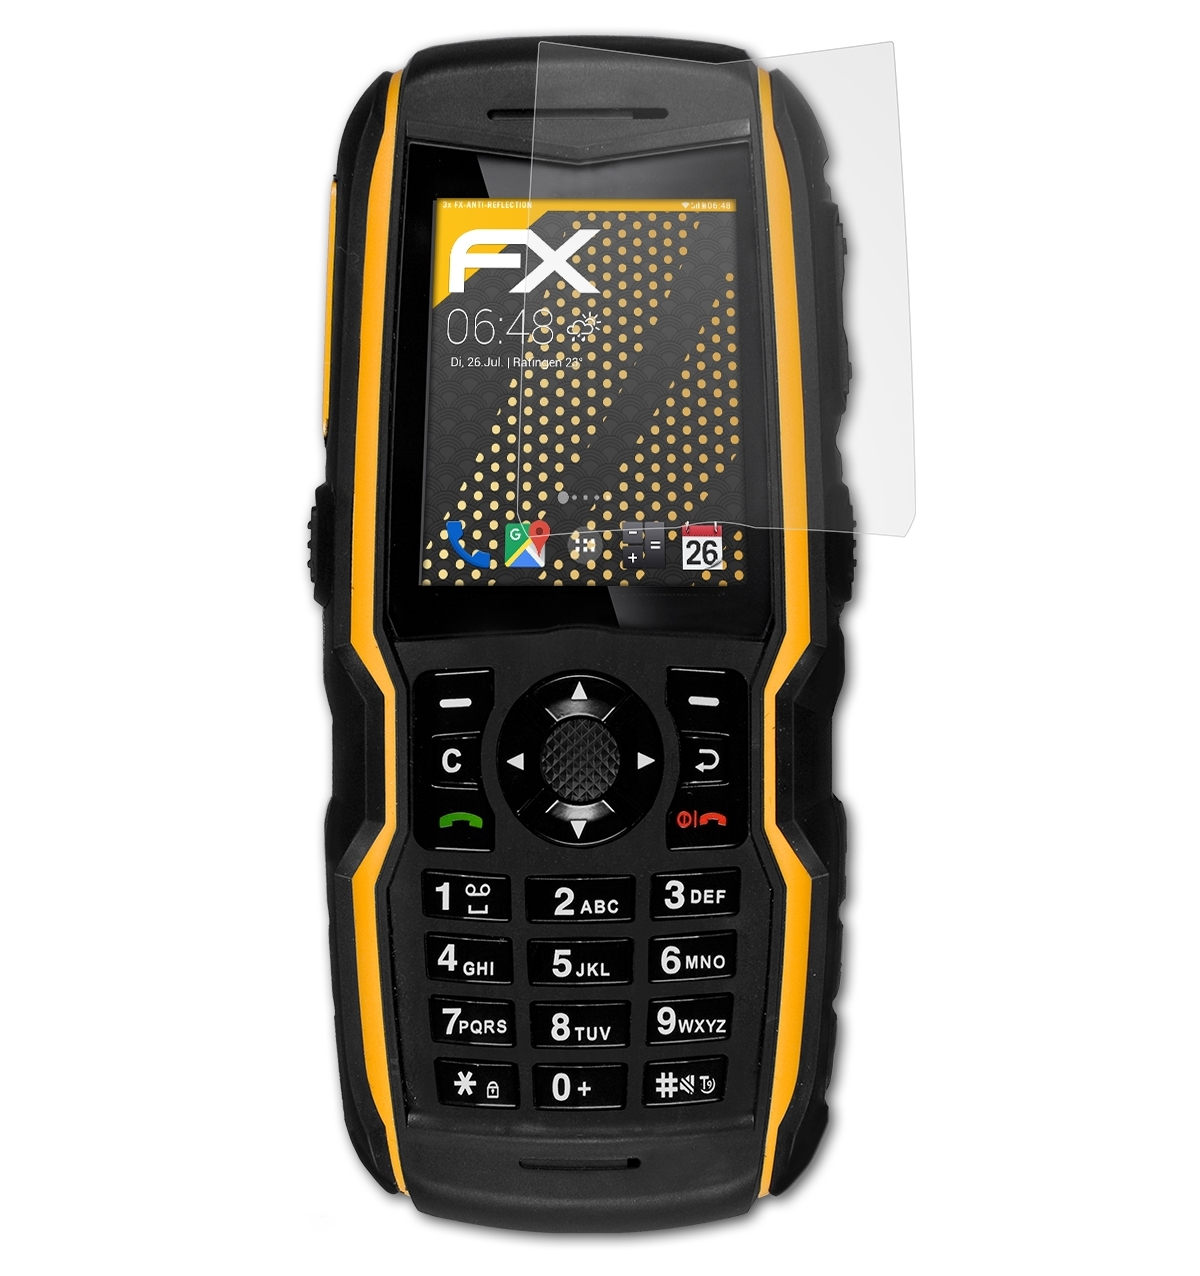 ATFOLIX 3x FX-Antireflex Bolt XP1520 Displayschutz(für SL) Sonim